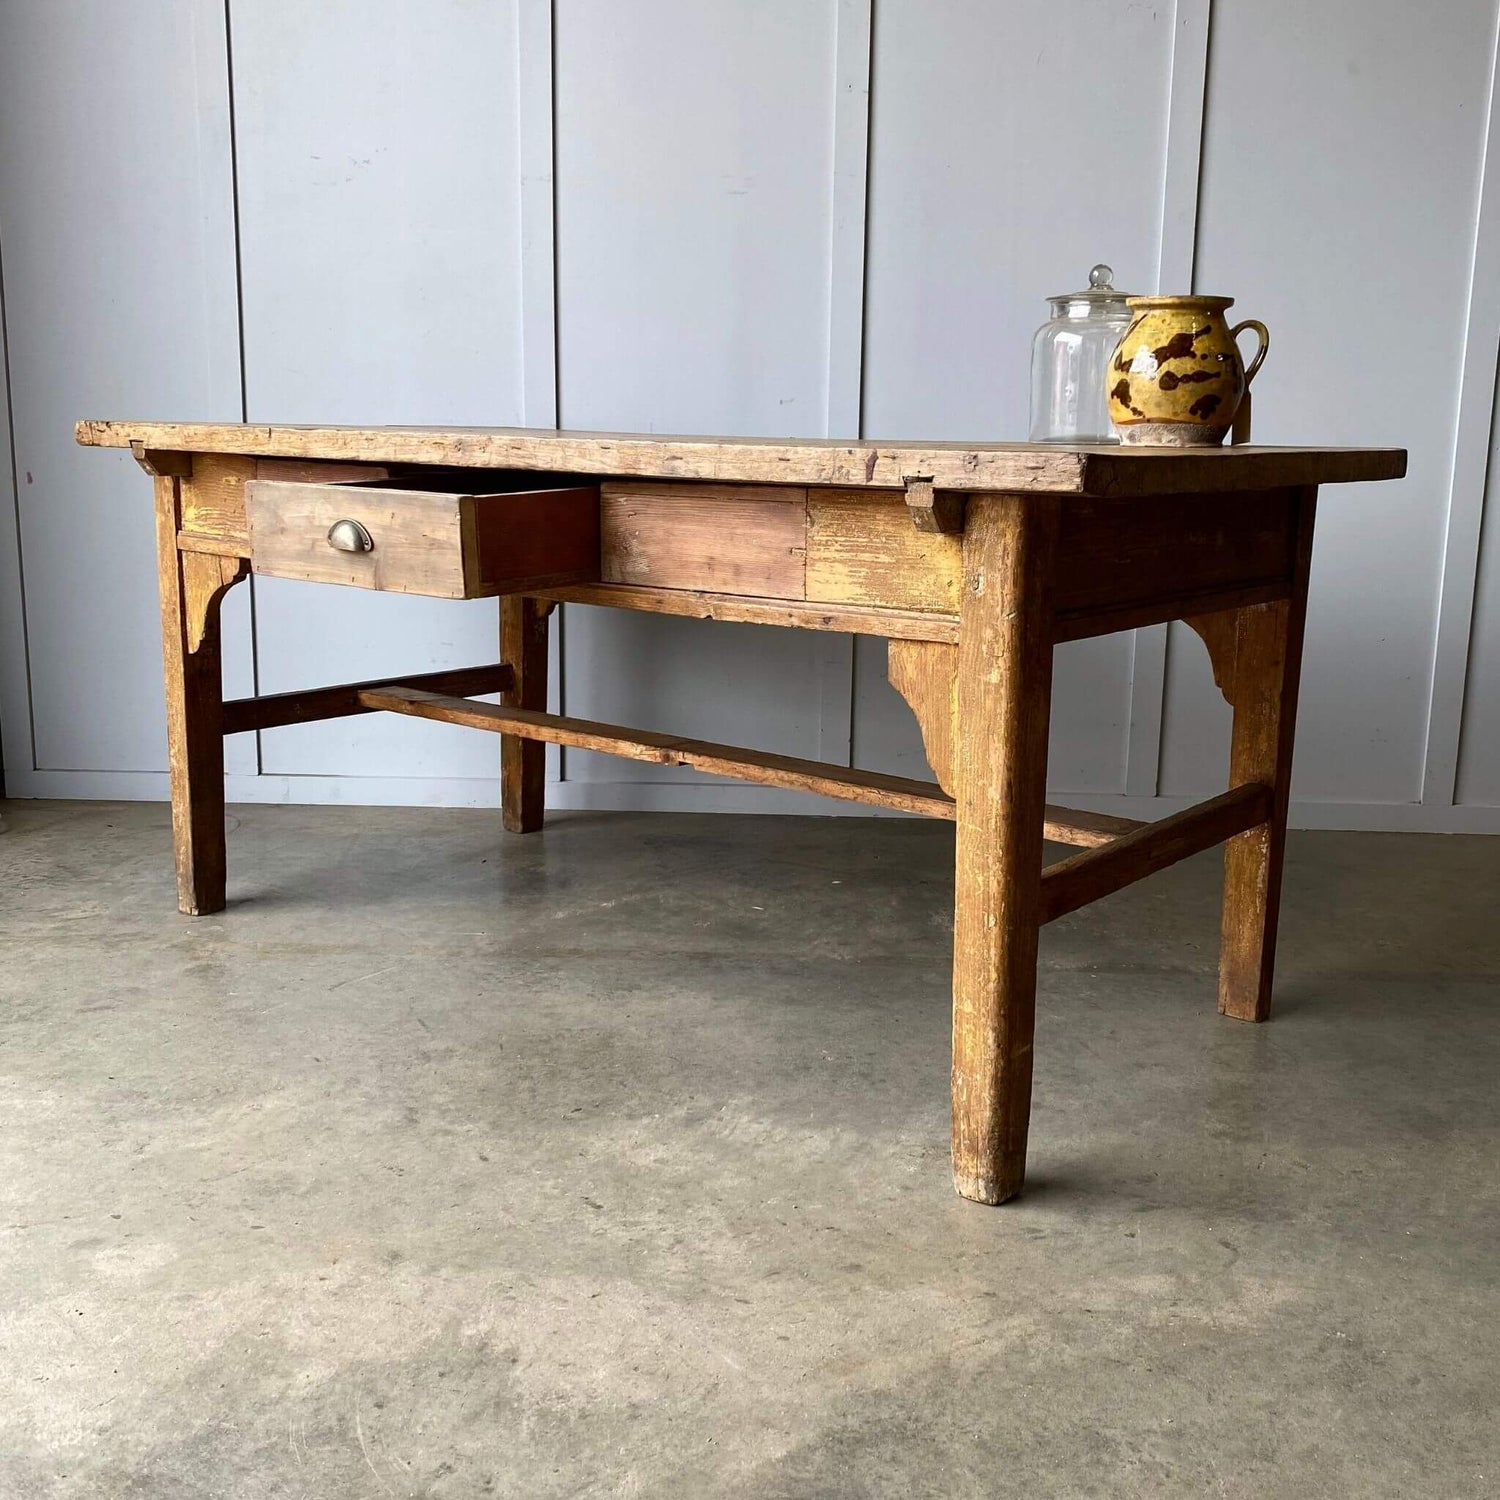 Antique farmhouse kitchen table